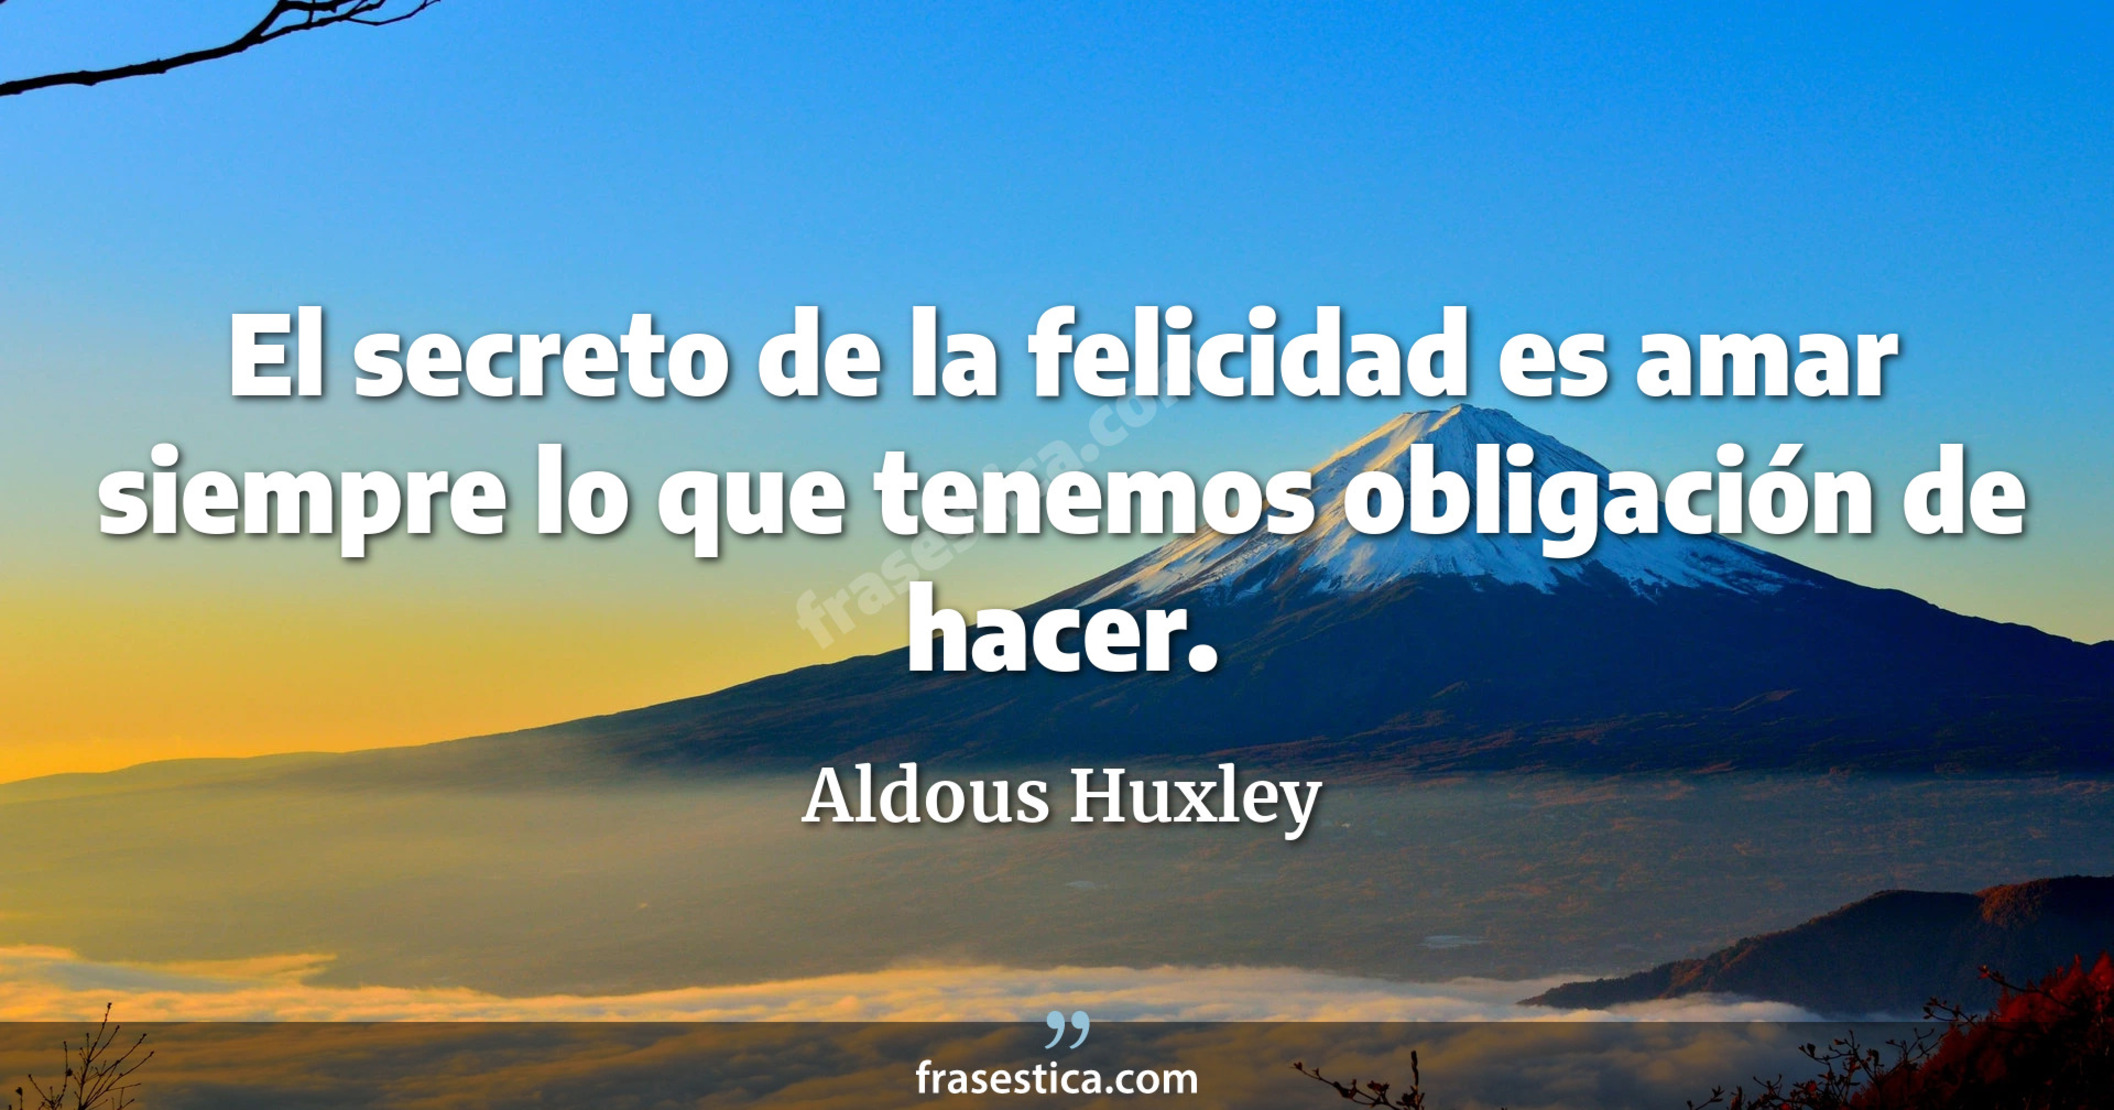 El secreto de la felicidad es amar siempre lo que tenemos obligación de hacer. - Aldous Huxley